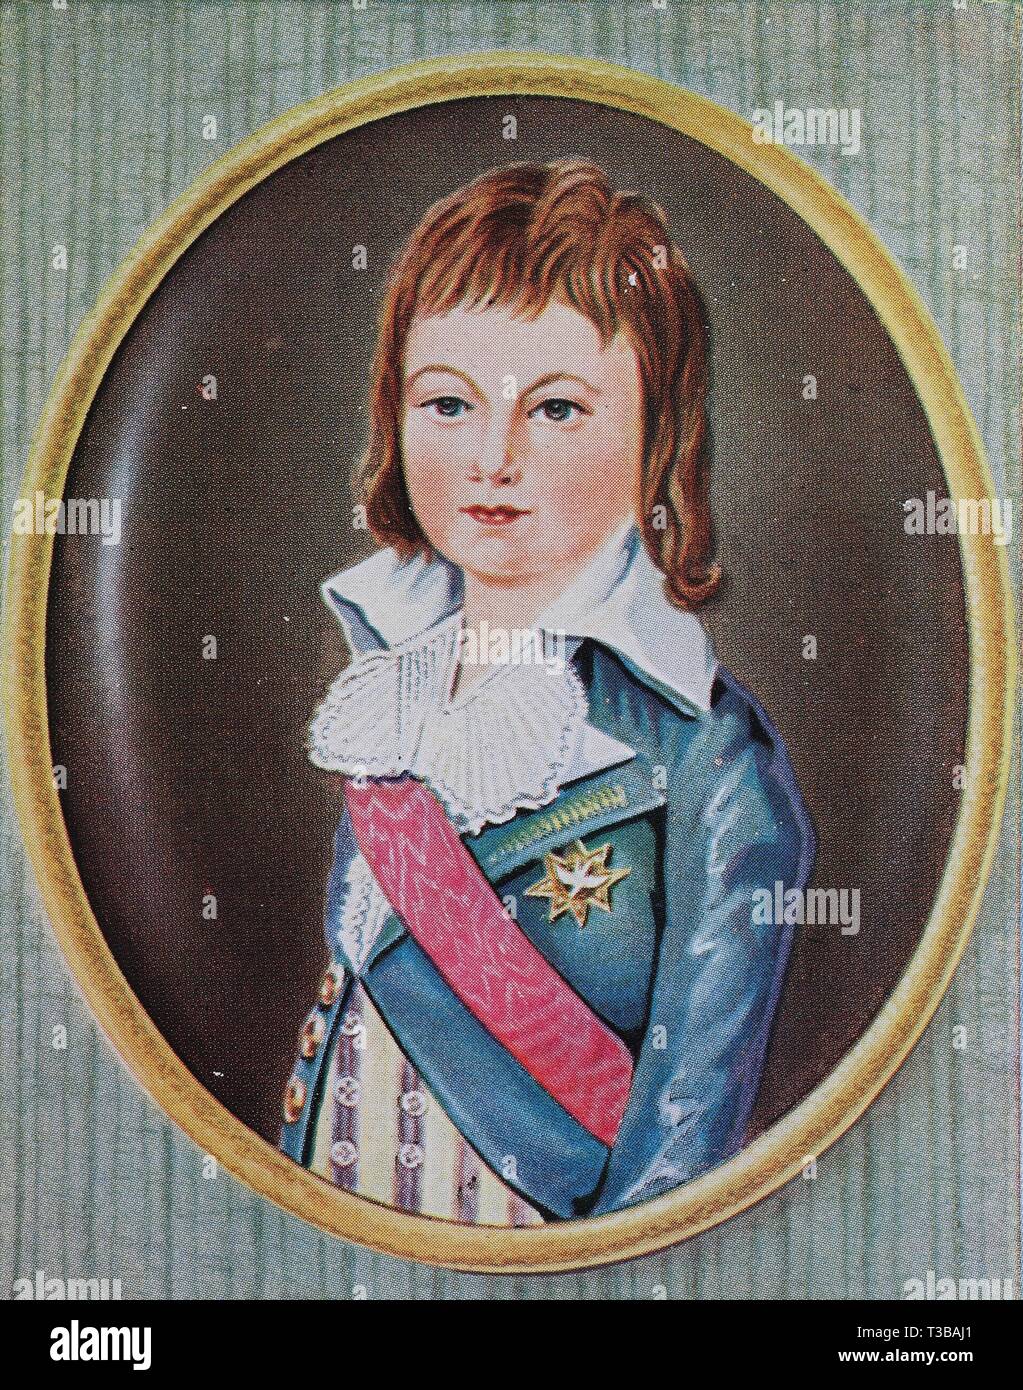 Louis XVII, 1785-1795, nato Louis-Charles, era il figlio più giovane del re Luigi XVI di Francia e la regina Maria Antonietta, storico illustrazione, 1880, Foto Stock